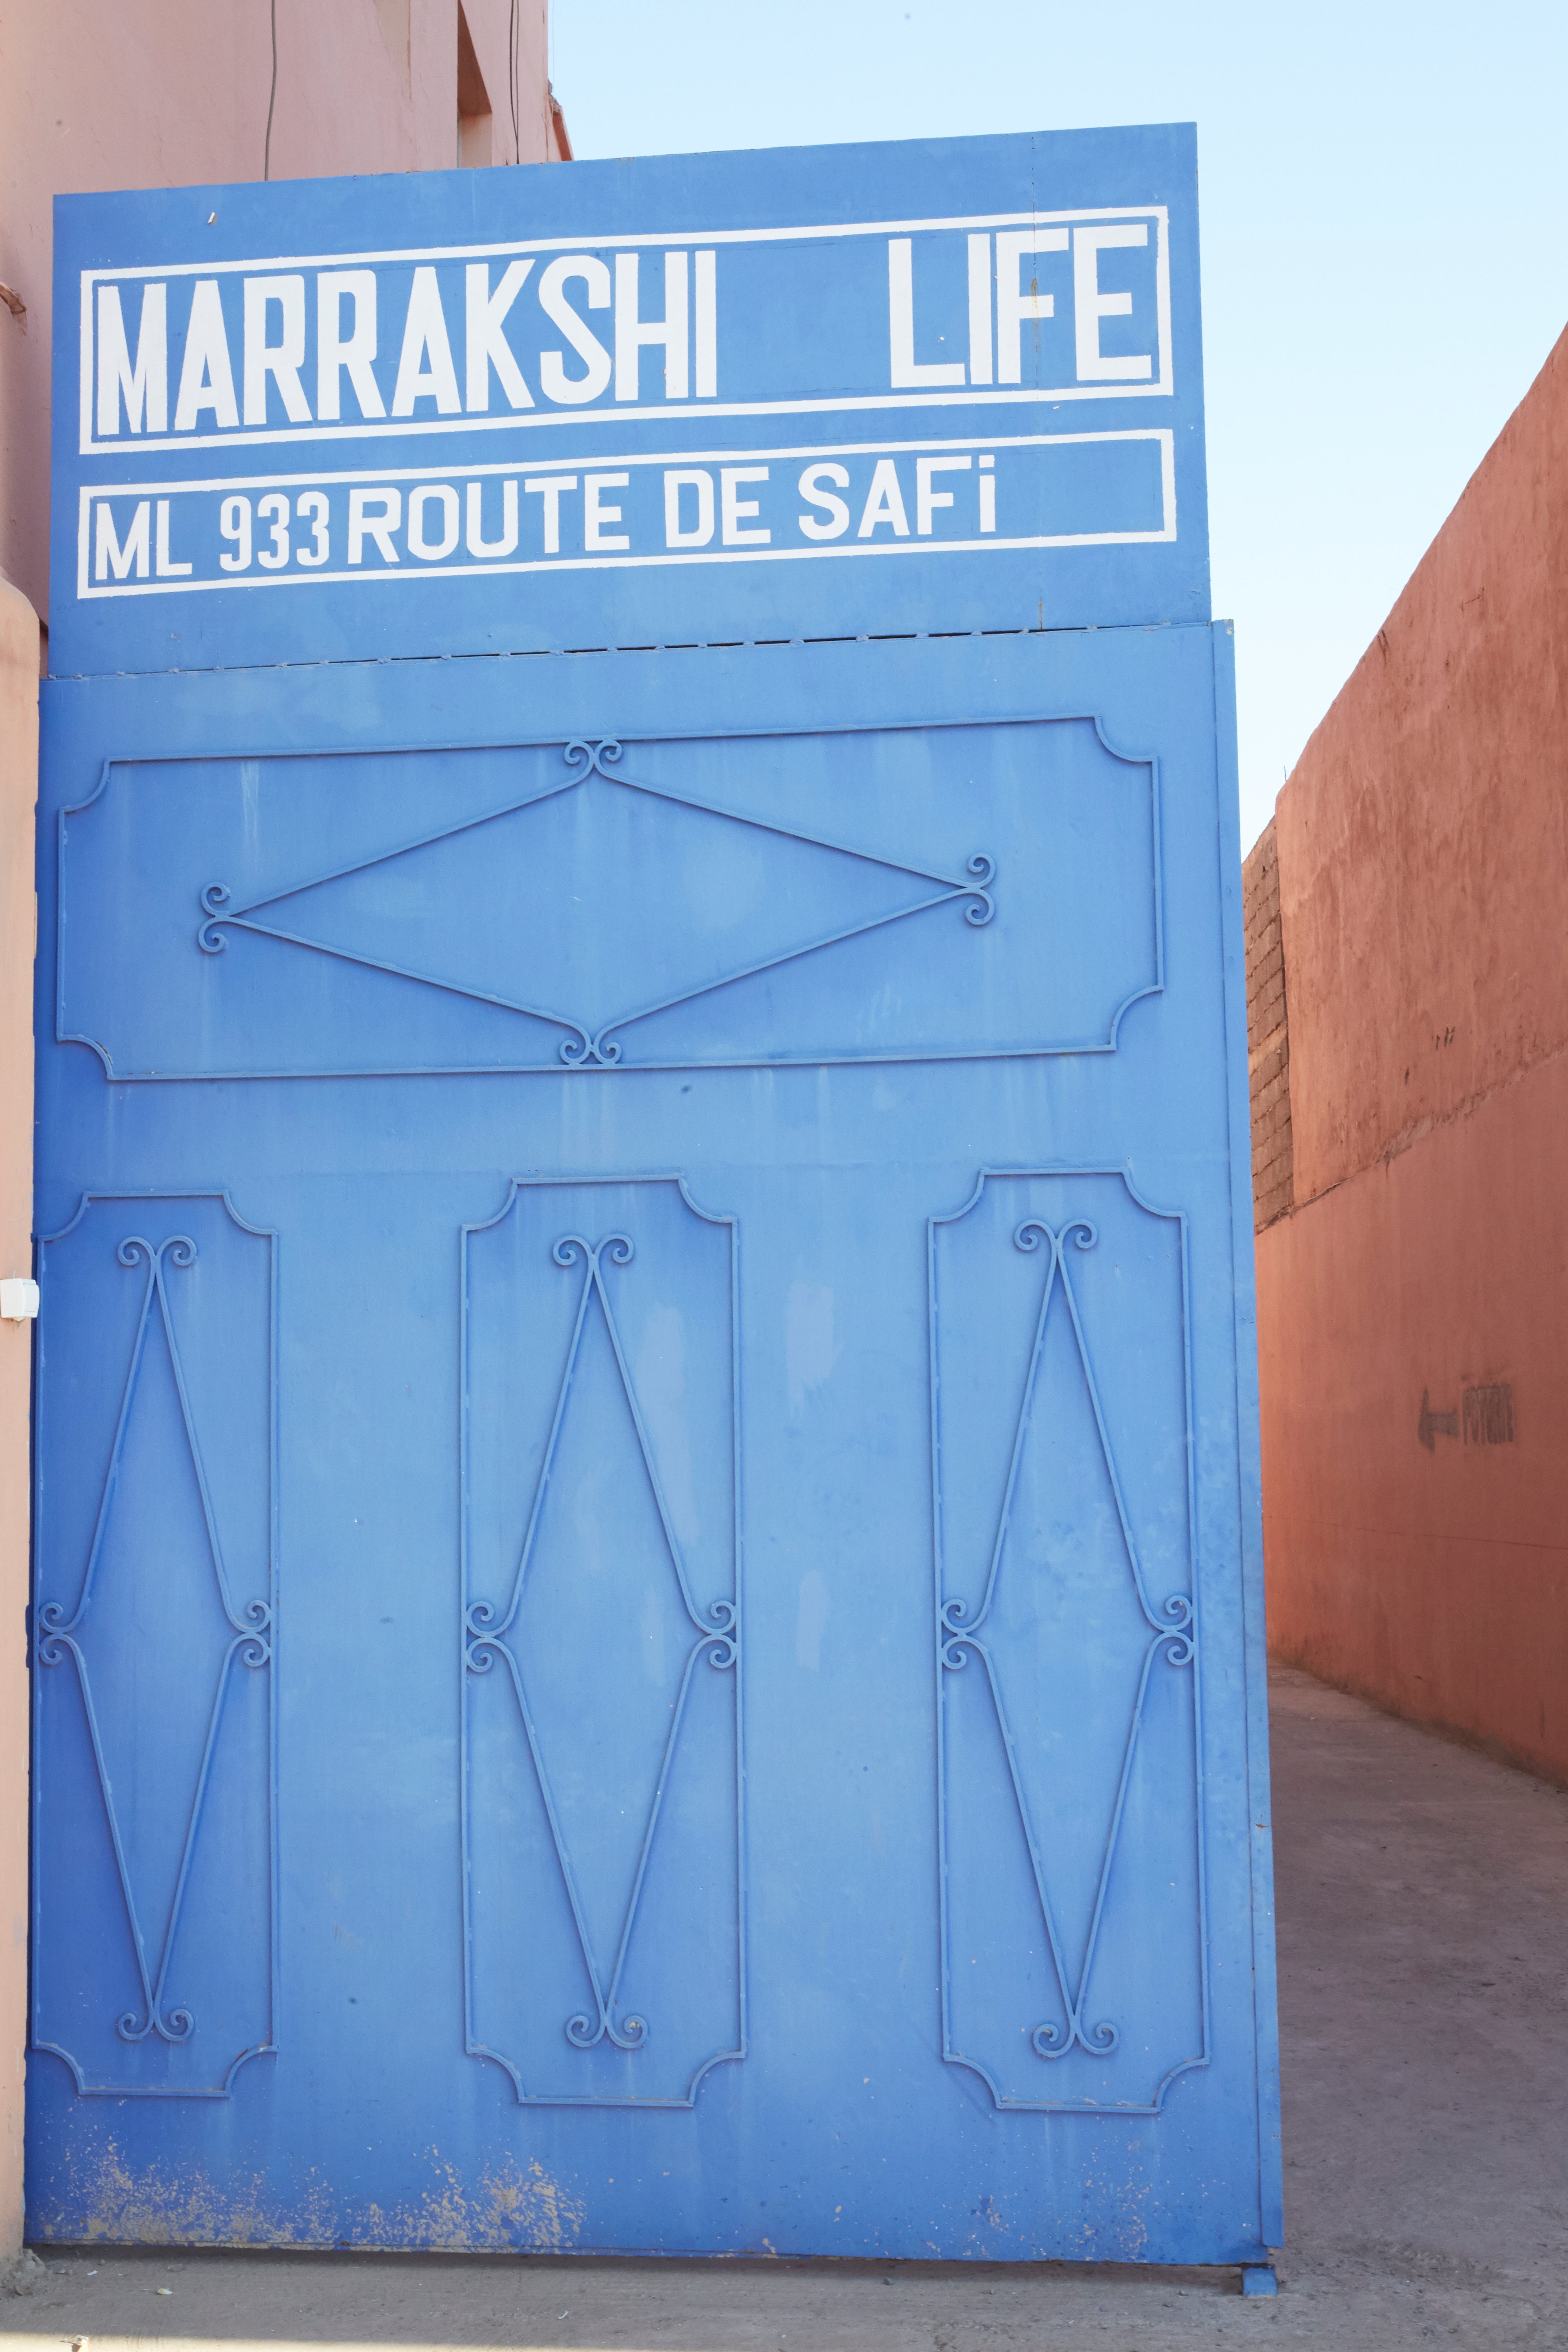 Marrakshi Life in Marrakesh’s industrial zone